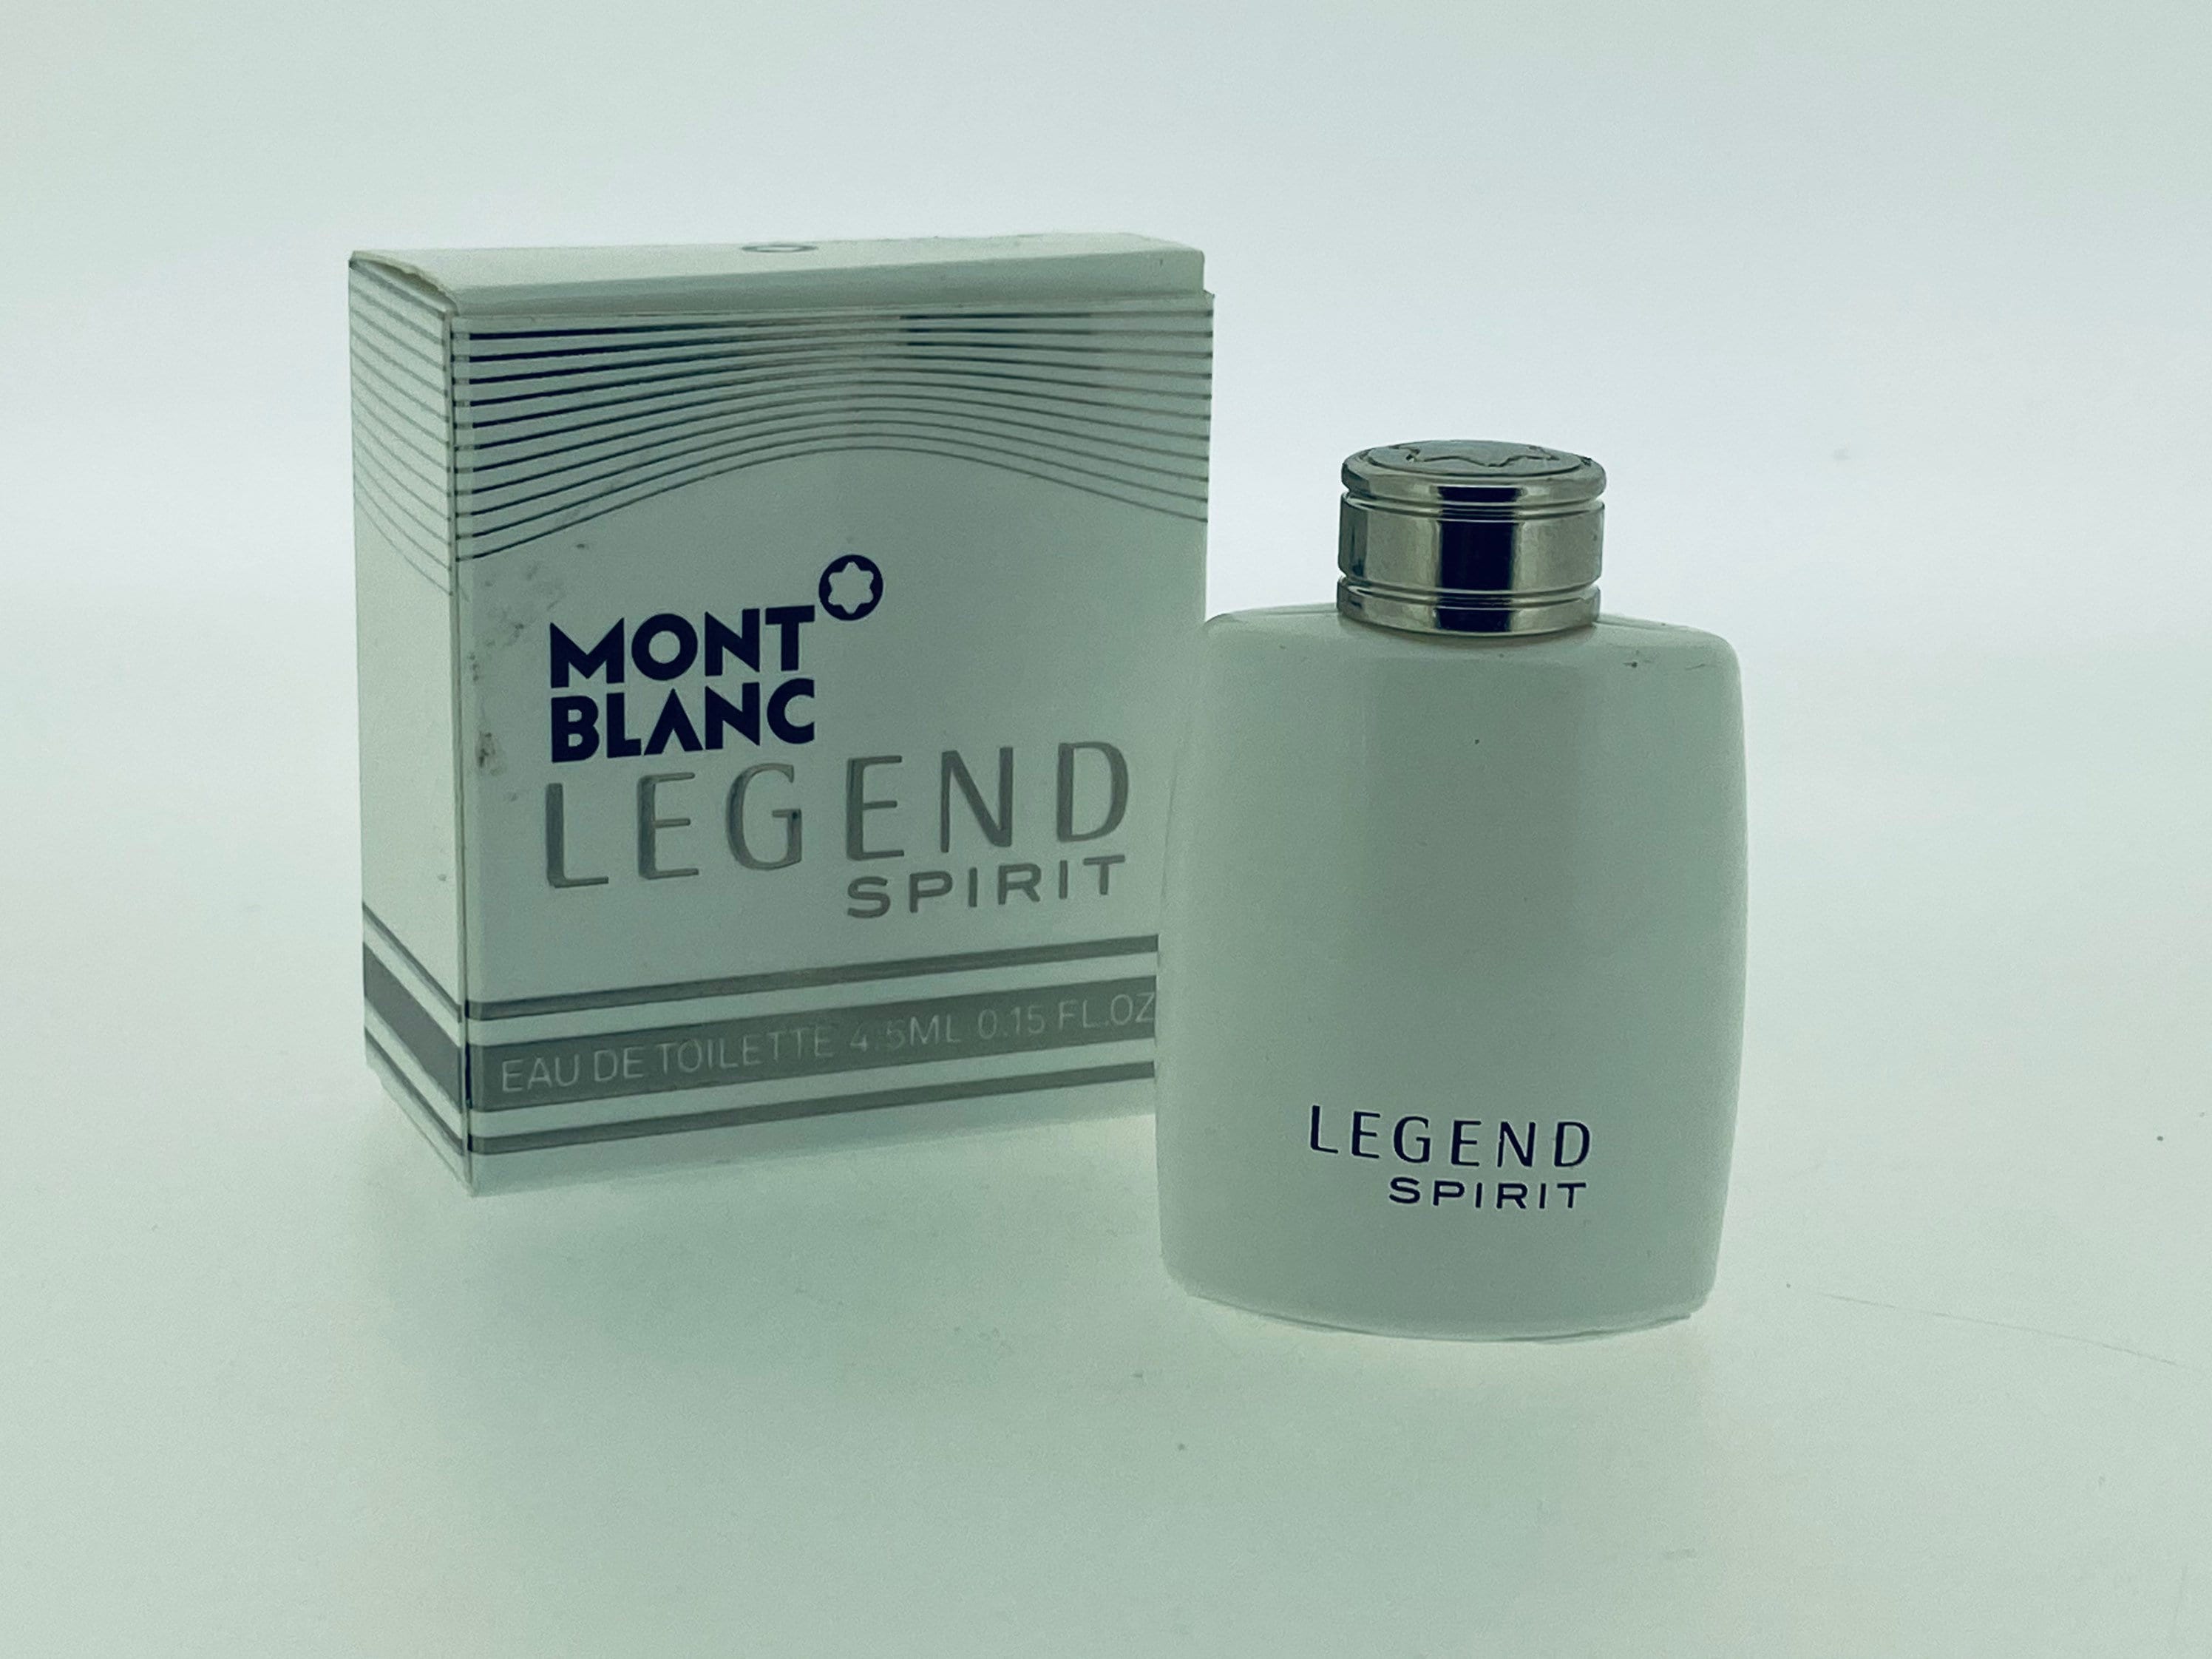 Eau De Toilette Spray Legend Spirit de Mont Blanc en 100 ML pour Homme